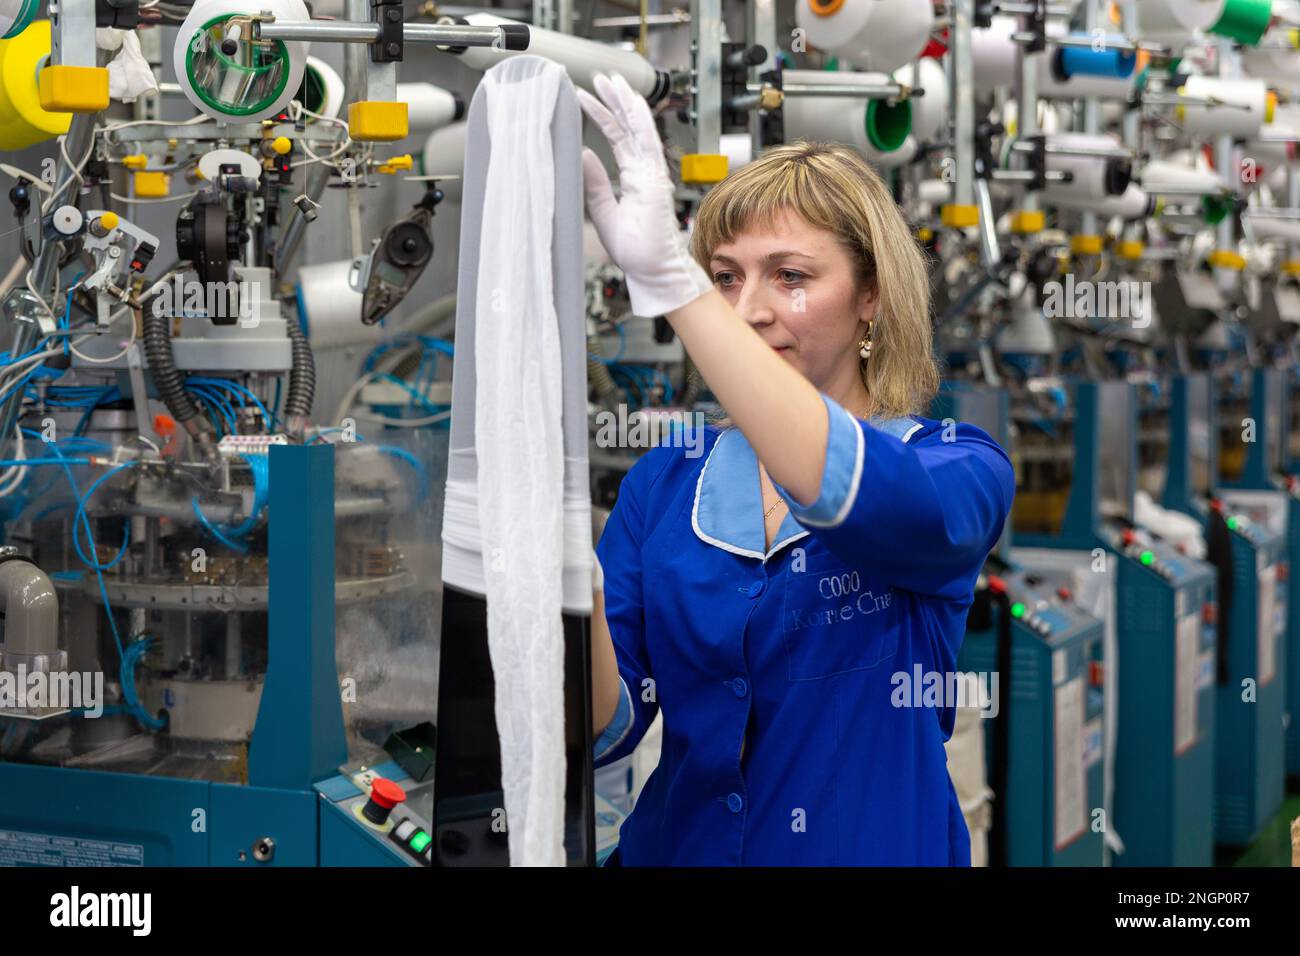 Grodno, Bélarus - 22 novembre 2017: Une employée féminine effectue un contrôle visuel de la qualité de la bonneterie dans JLLC Conte Spa. Même une fabrication de haute précision Banque D'Images